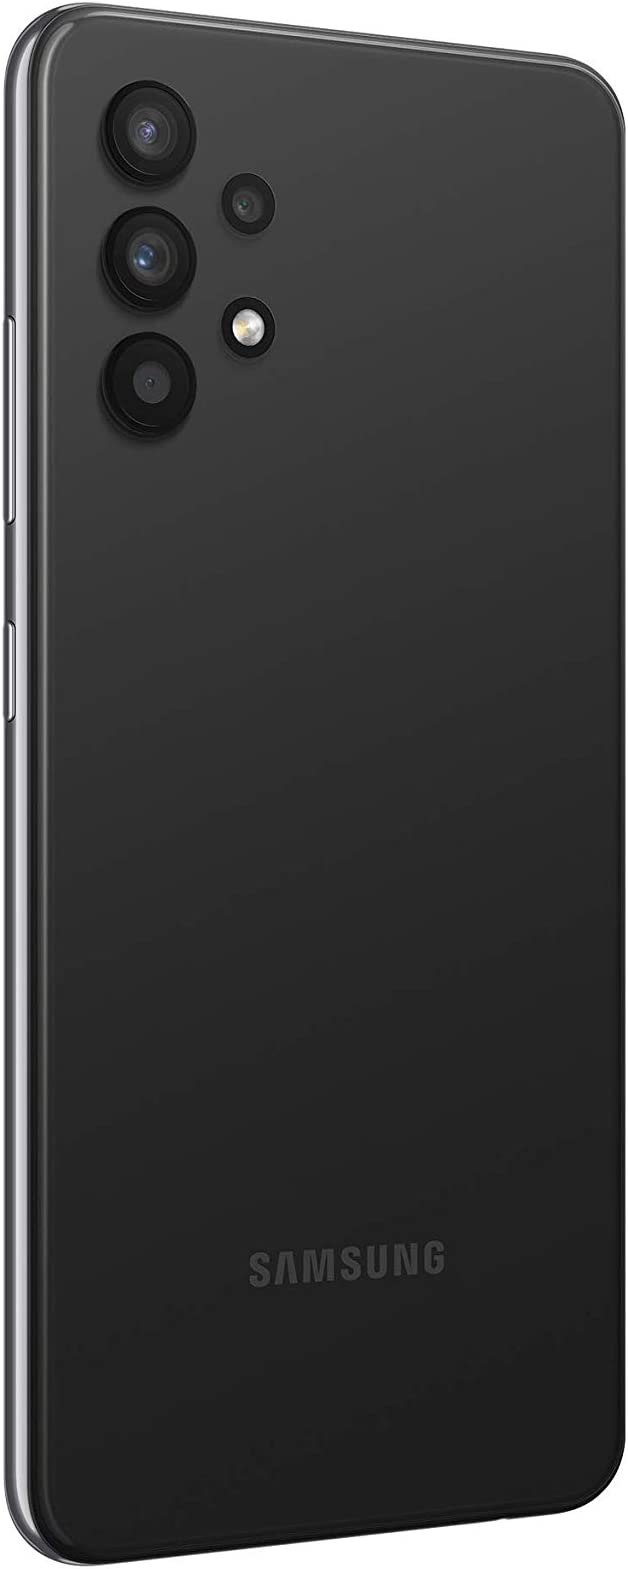 Samsung Galaxy A32 Dual SIM Smartphone, 128GB 6GB RAM LTE (UAE Version), Black